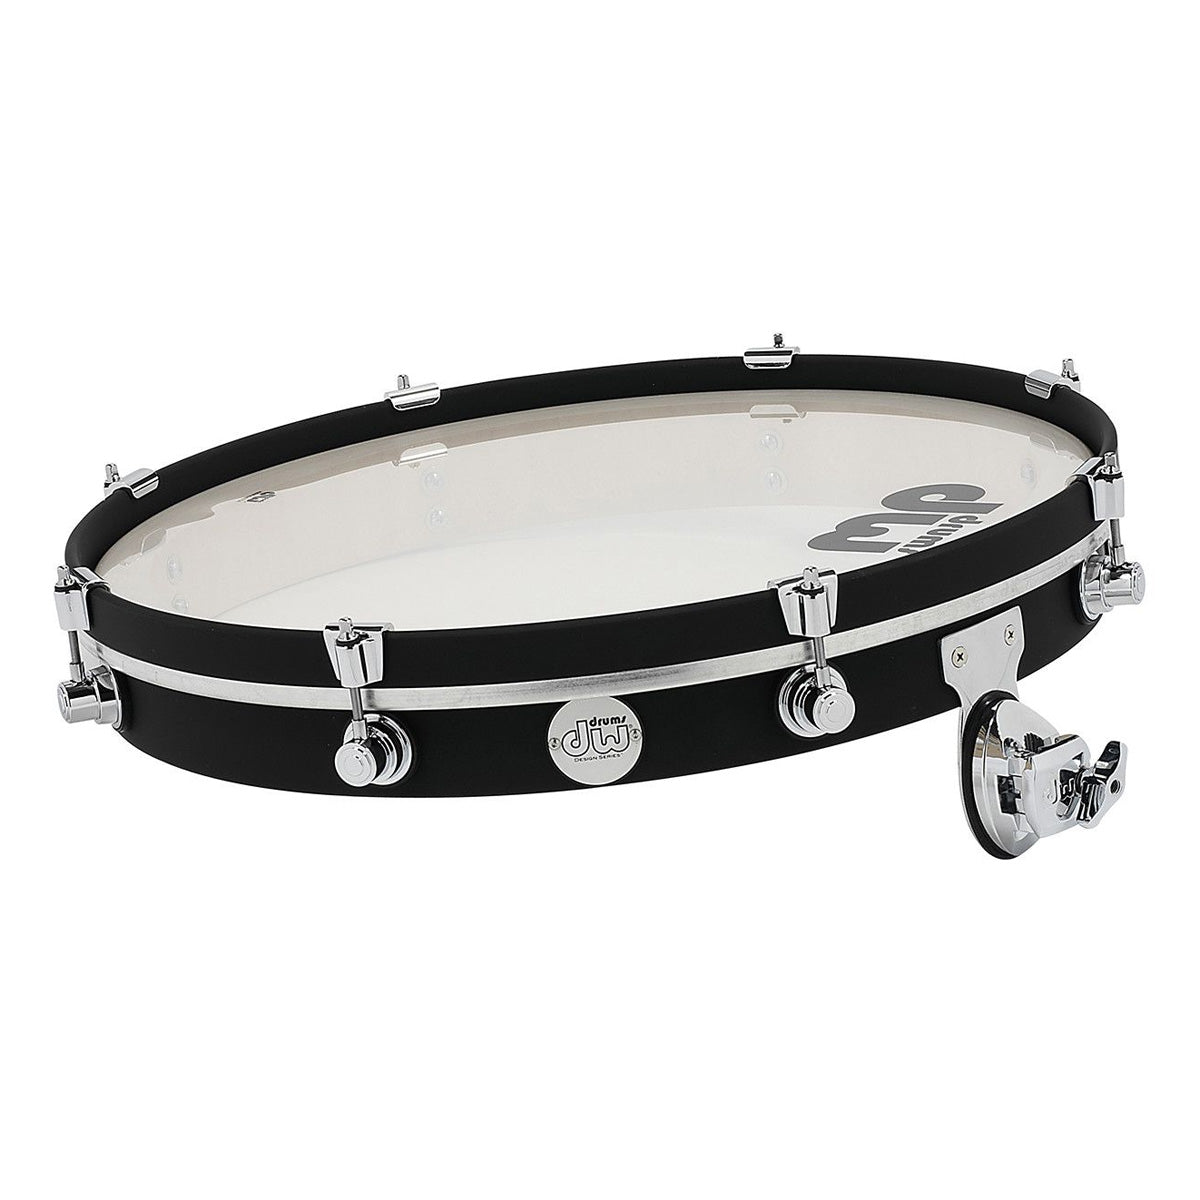 DW Design Series "Pancake" Gong Drum in Flat Black